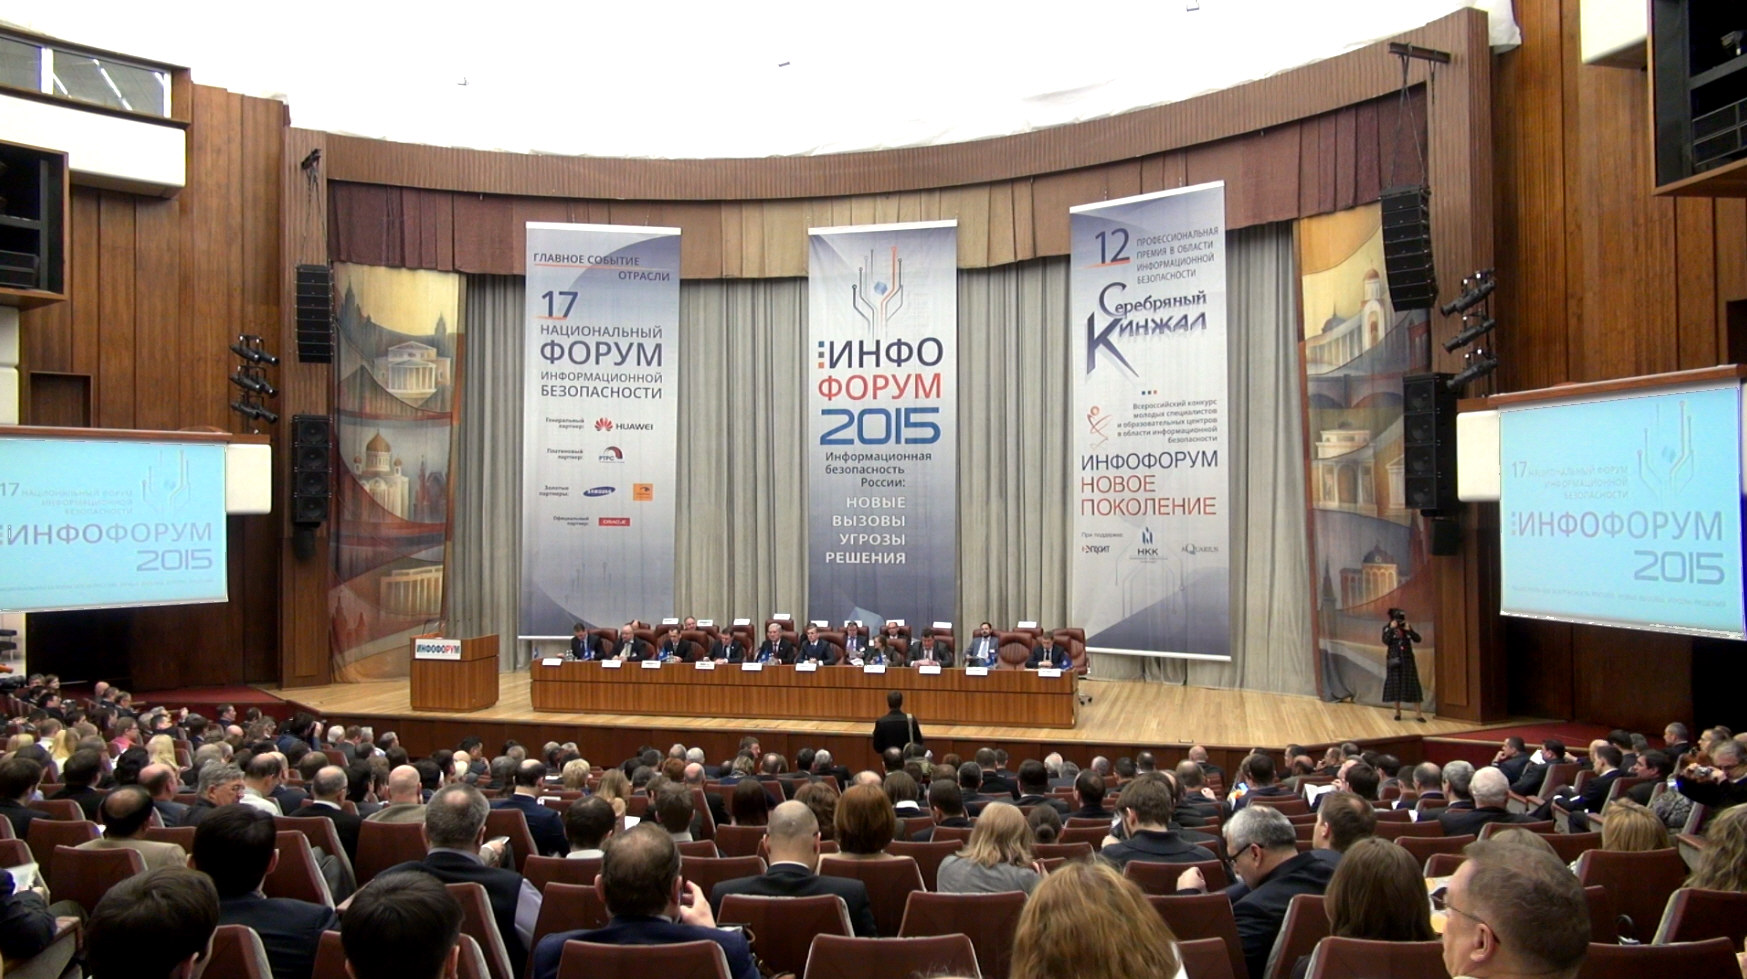 17-й Национальный форум информационной безопасности (ИНФОФОРУМ)